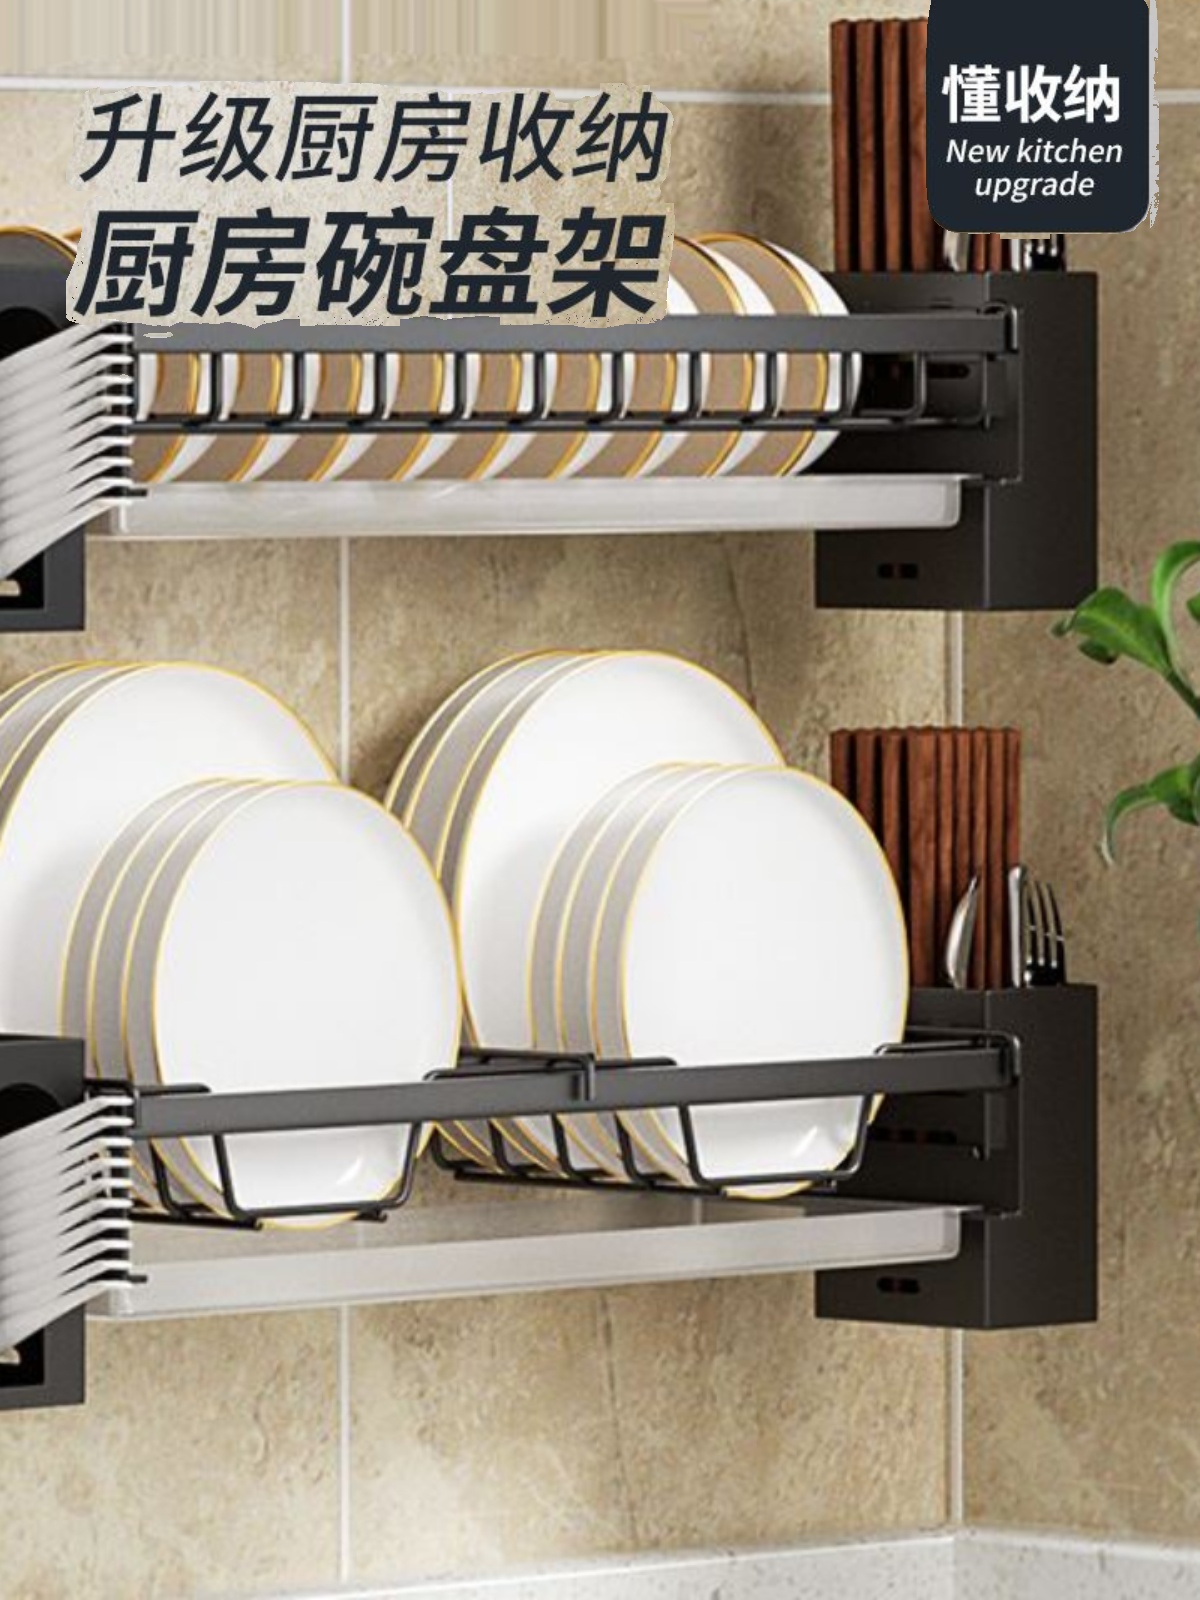 廚房神器必備壁掛瀝水碗盤收納架免打孔設計多種款式任君挑選打造整潔廚房空間